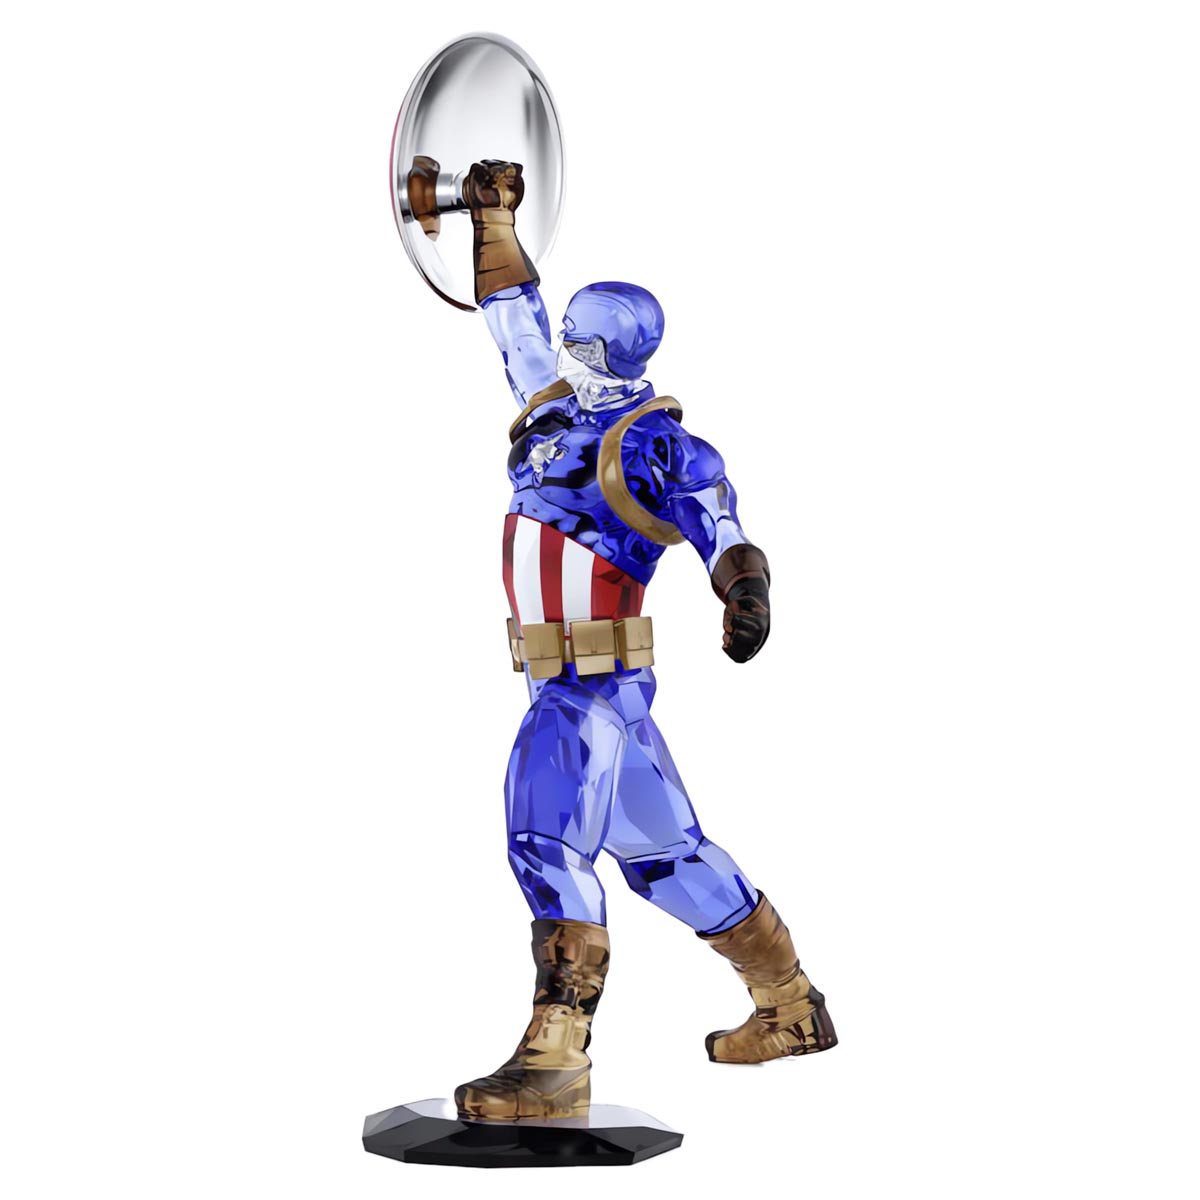 Swarovski Crystal Marvel Captain America